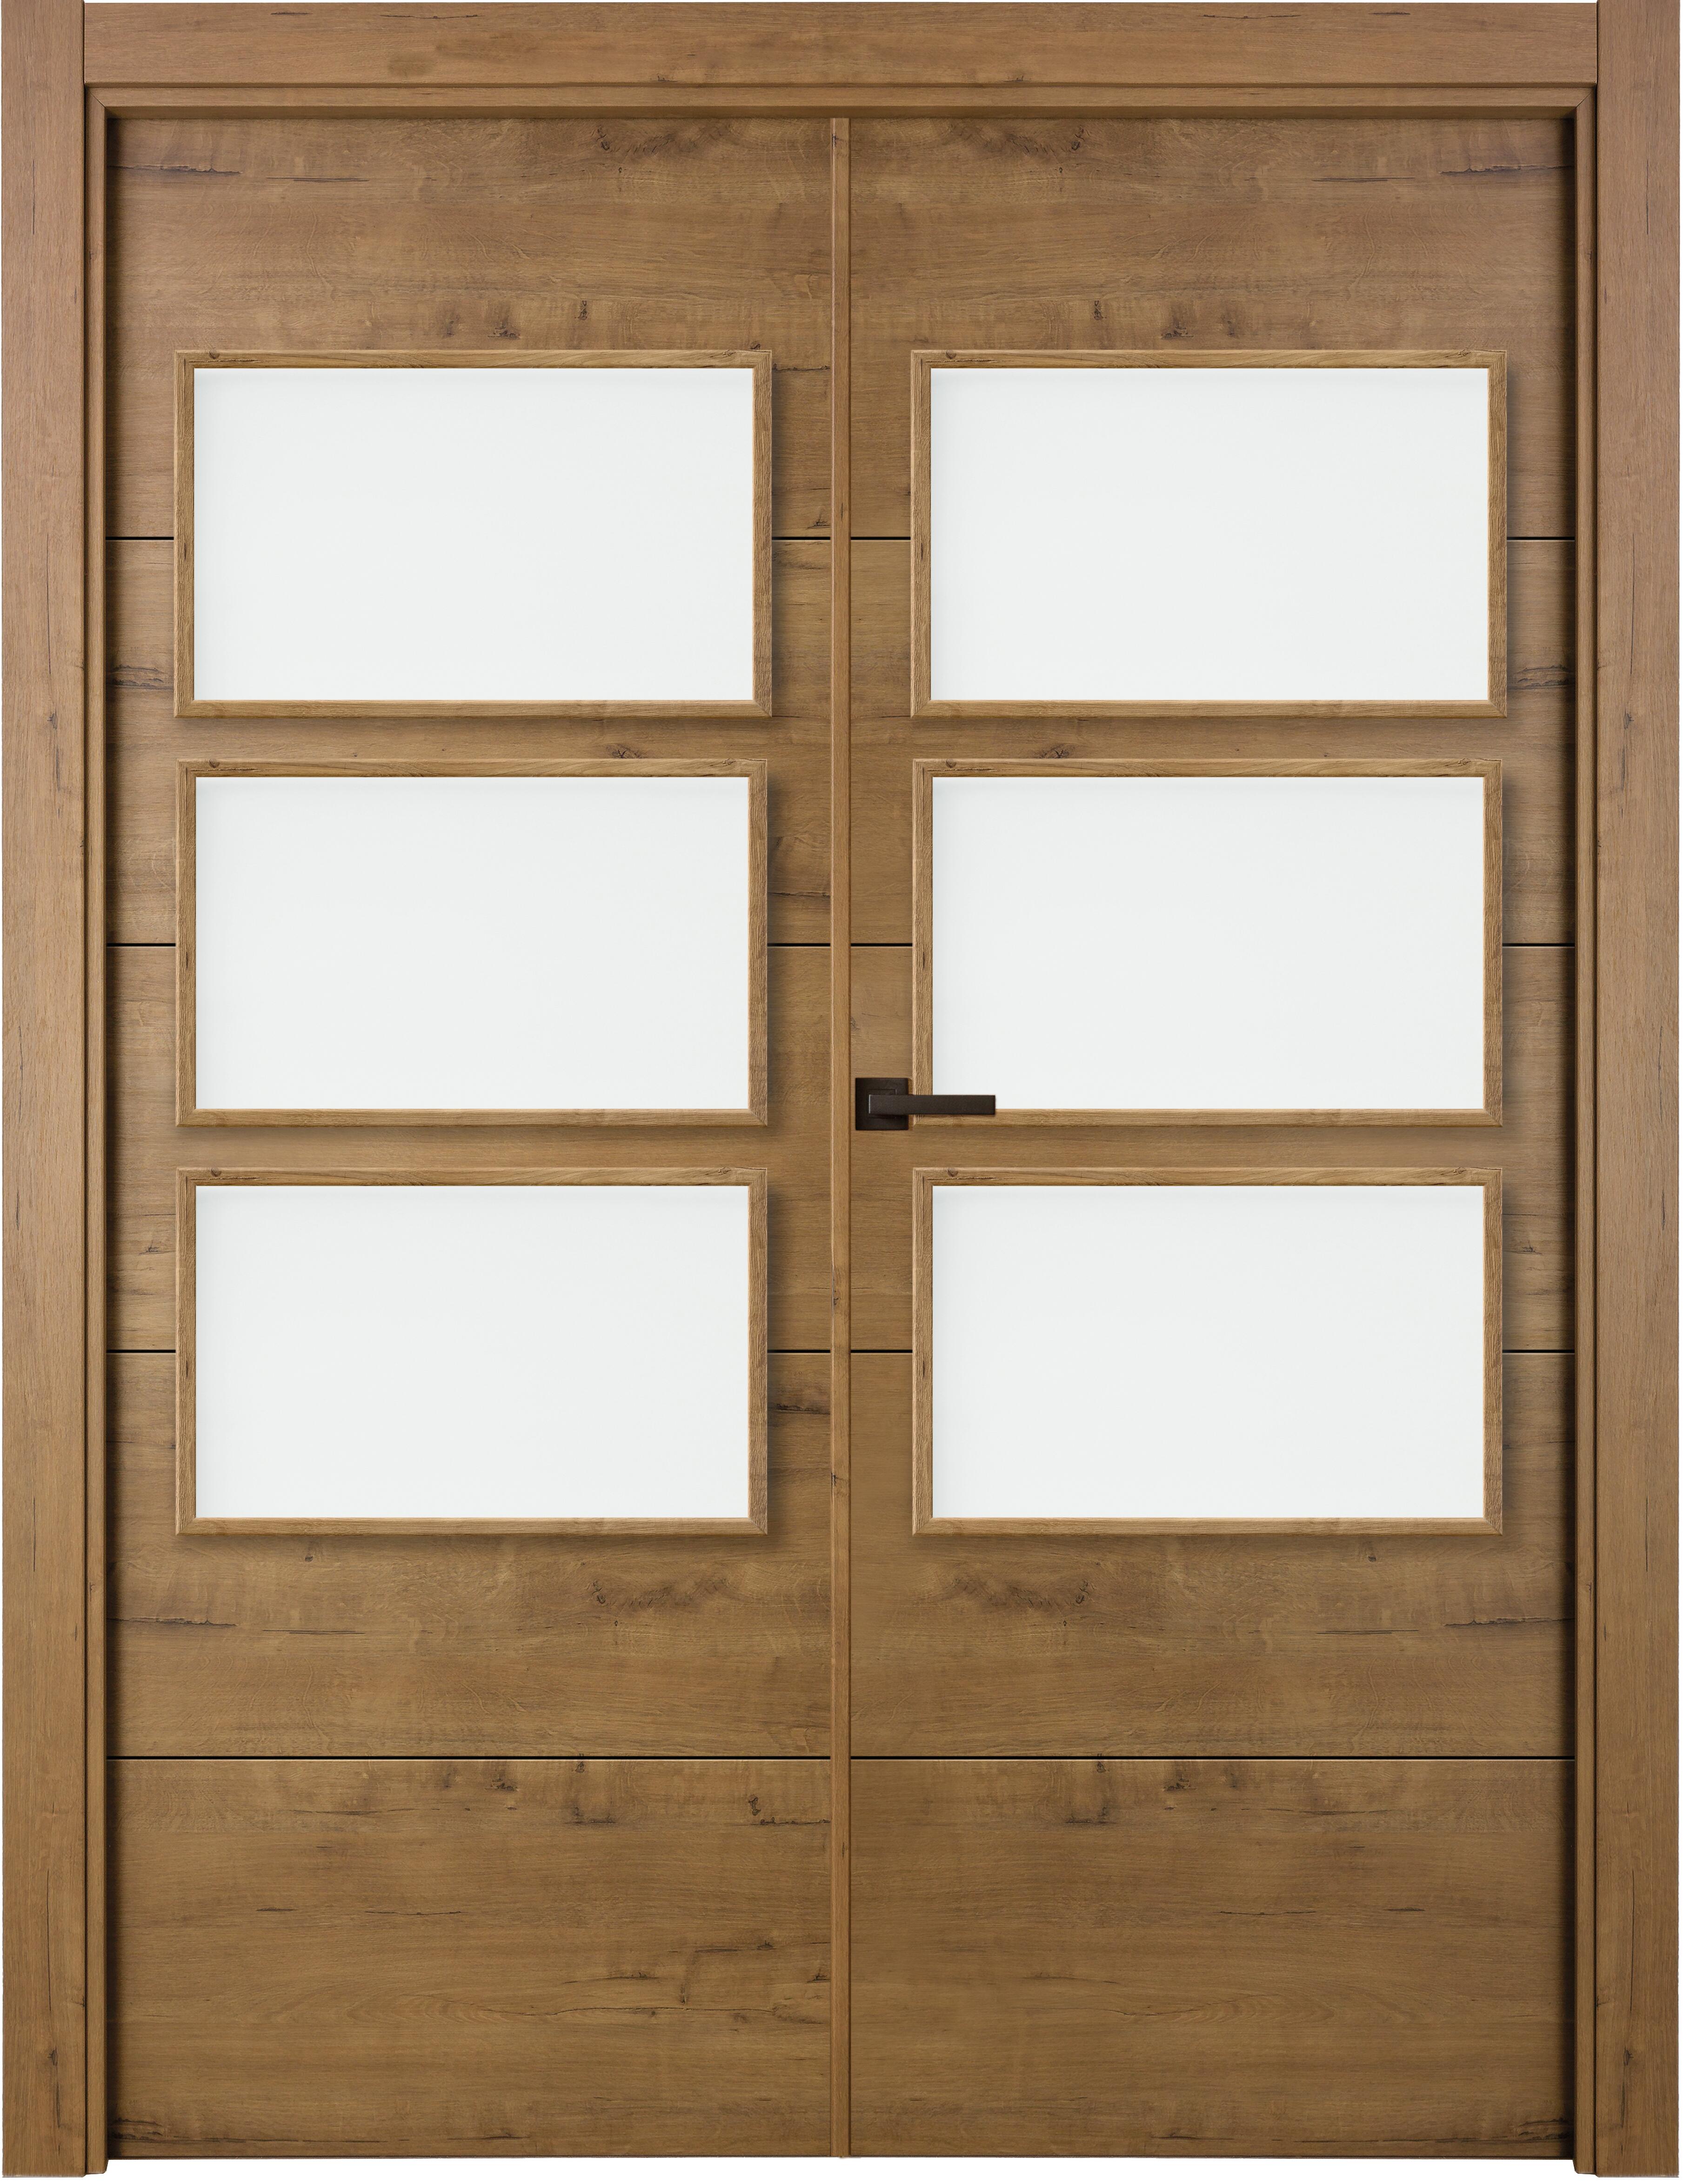 Puerta berna gold doble con vidriera de apertura derecha de 145 x 203 x 7 cm